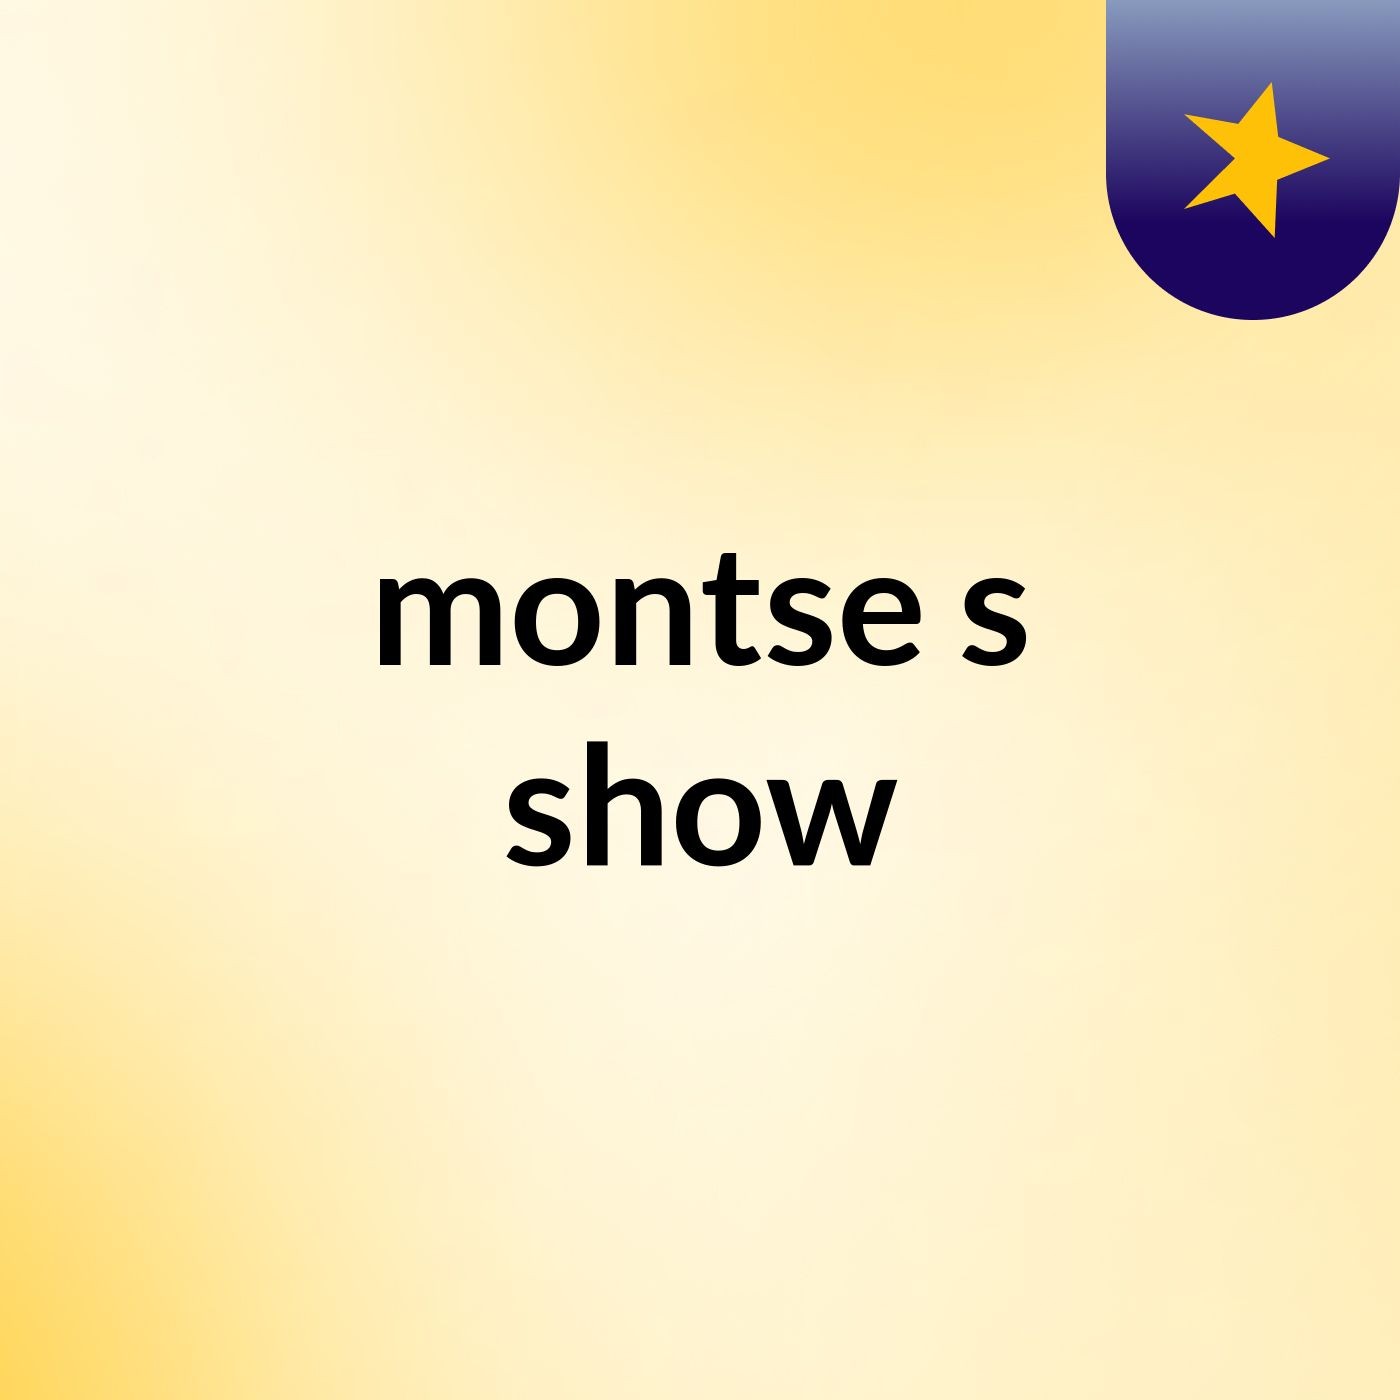 montse's show